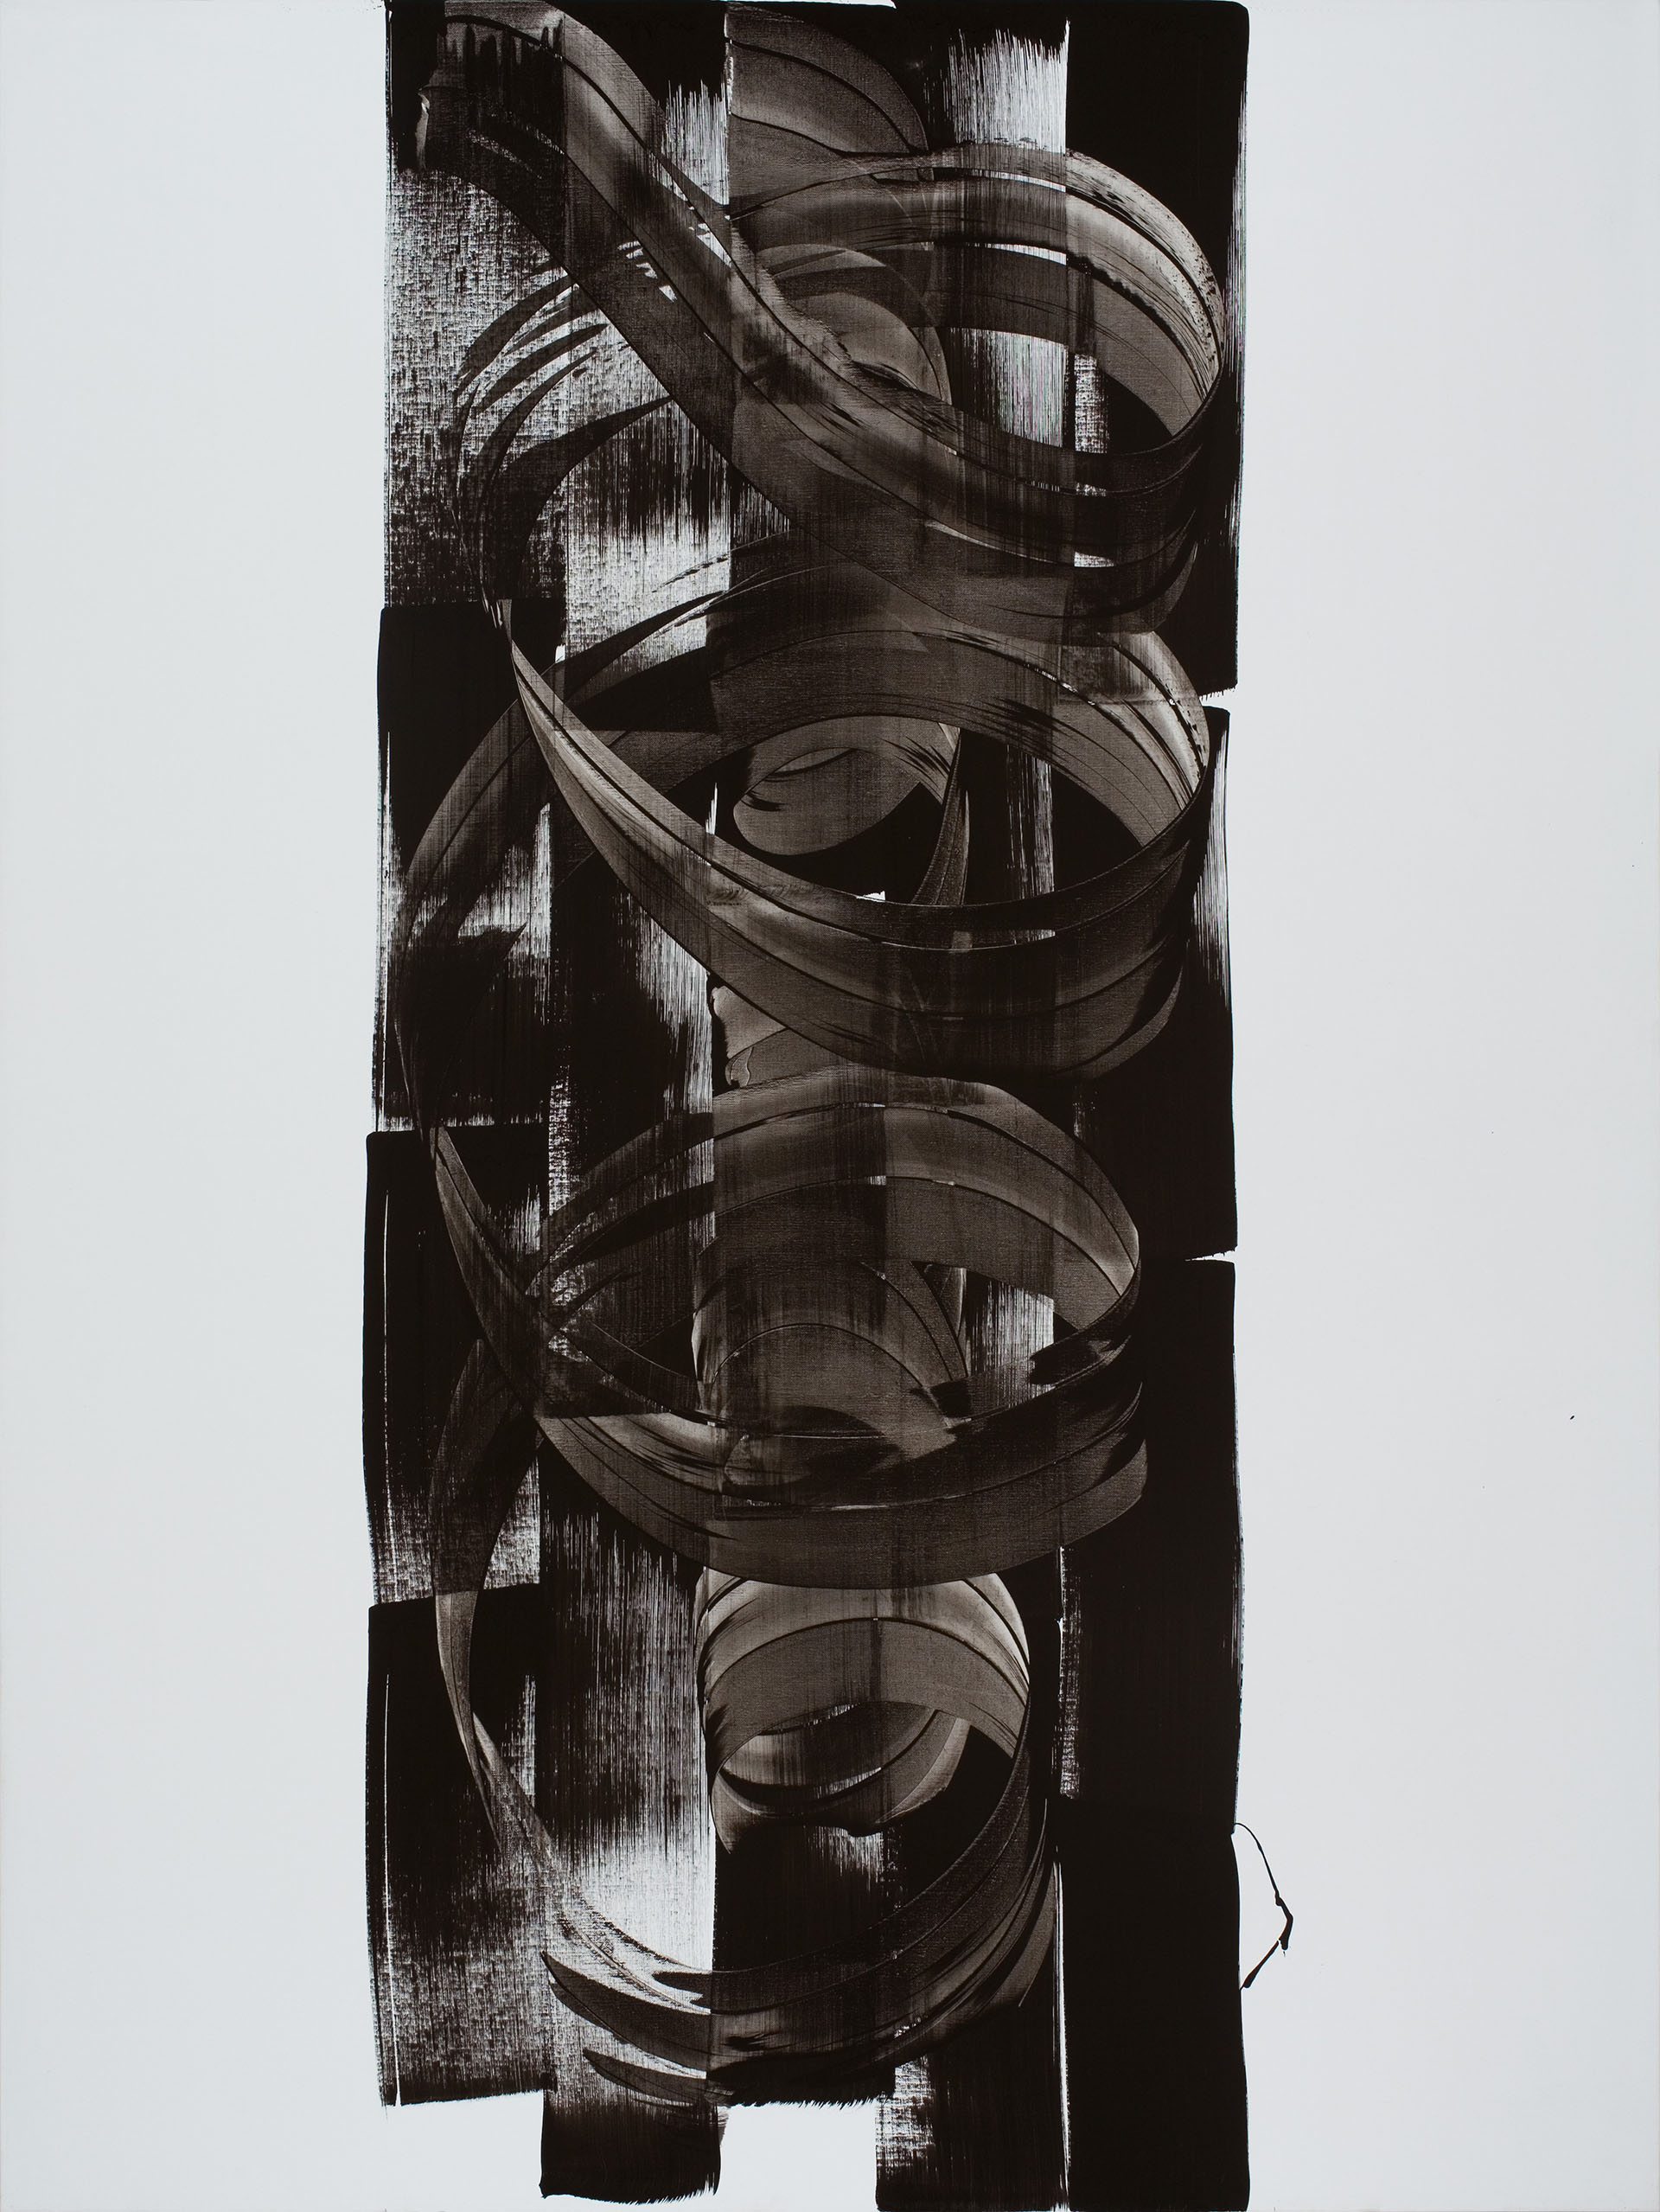 István NÁDLER: Feketebács No. 7. 2014 acrylic on canvas 200 x 150 cm